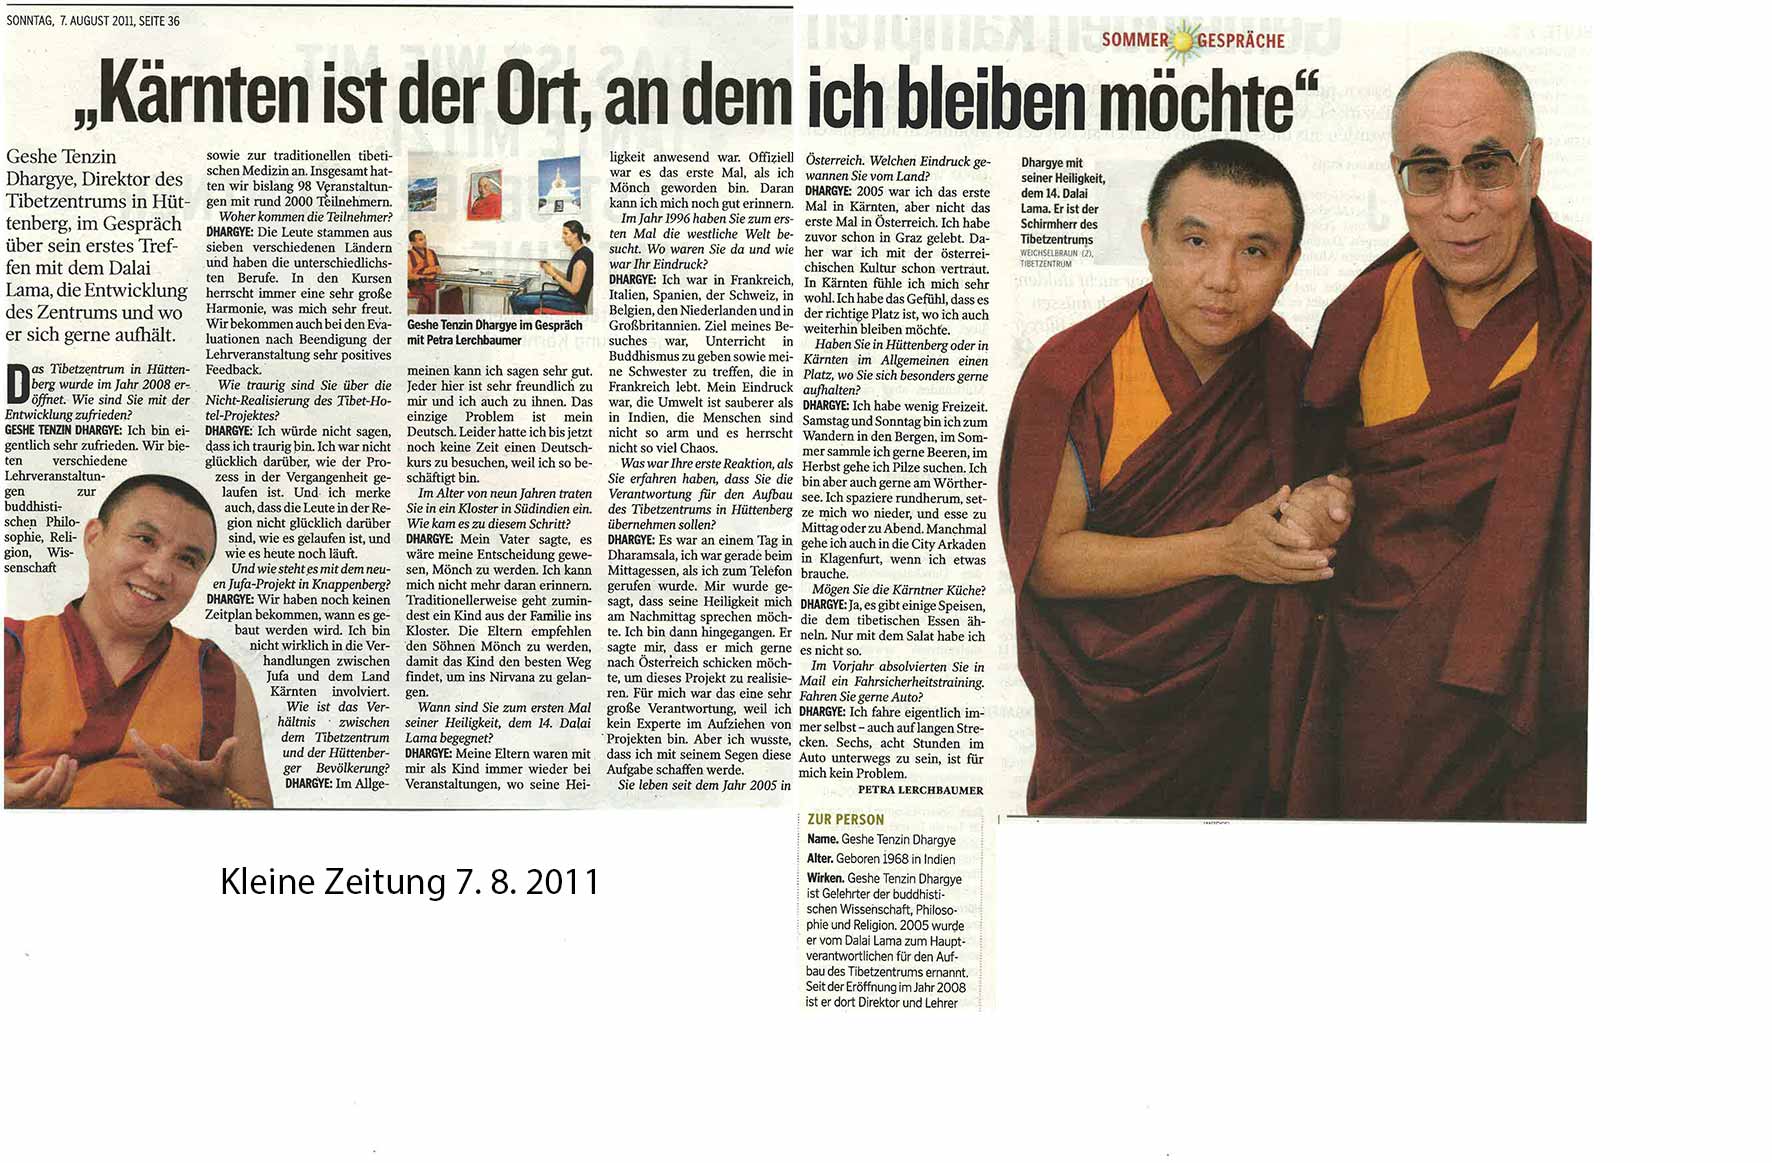 „Kärnten ist der Ort, an dem ich bleiben möchte!“ (Kleine Zeitung 08/2011)